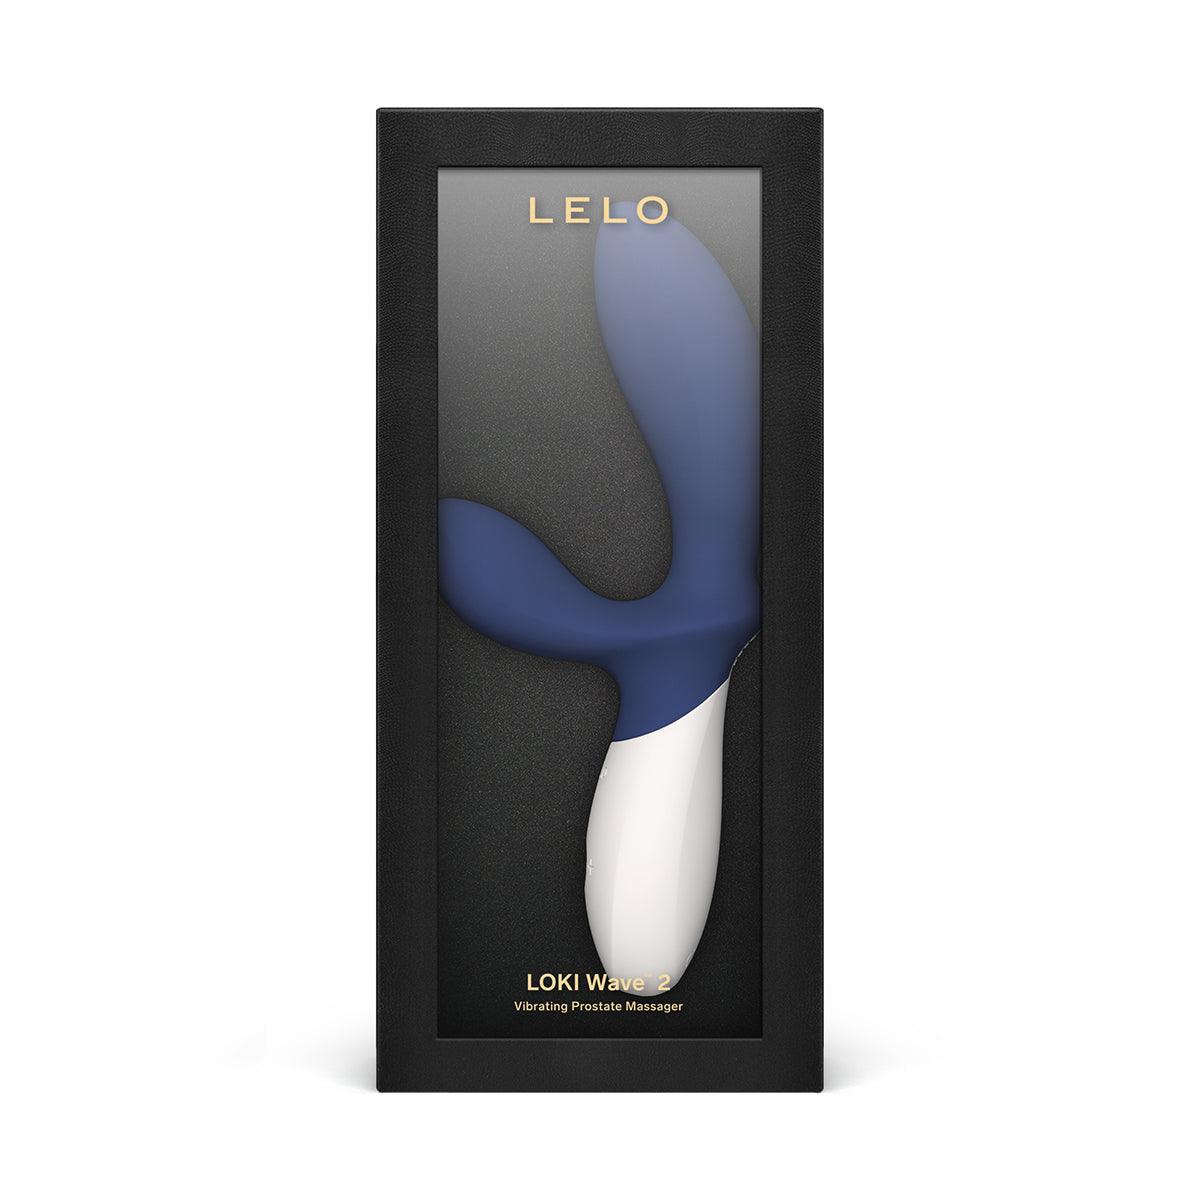 LELO Loki Wave 2 - Blue - shop enby